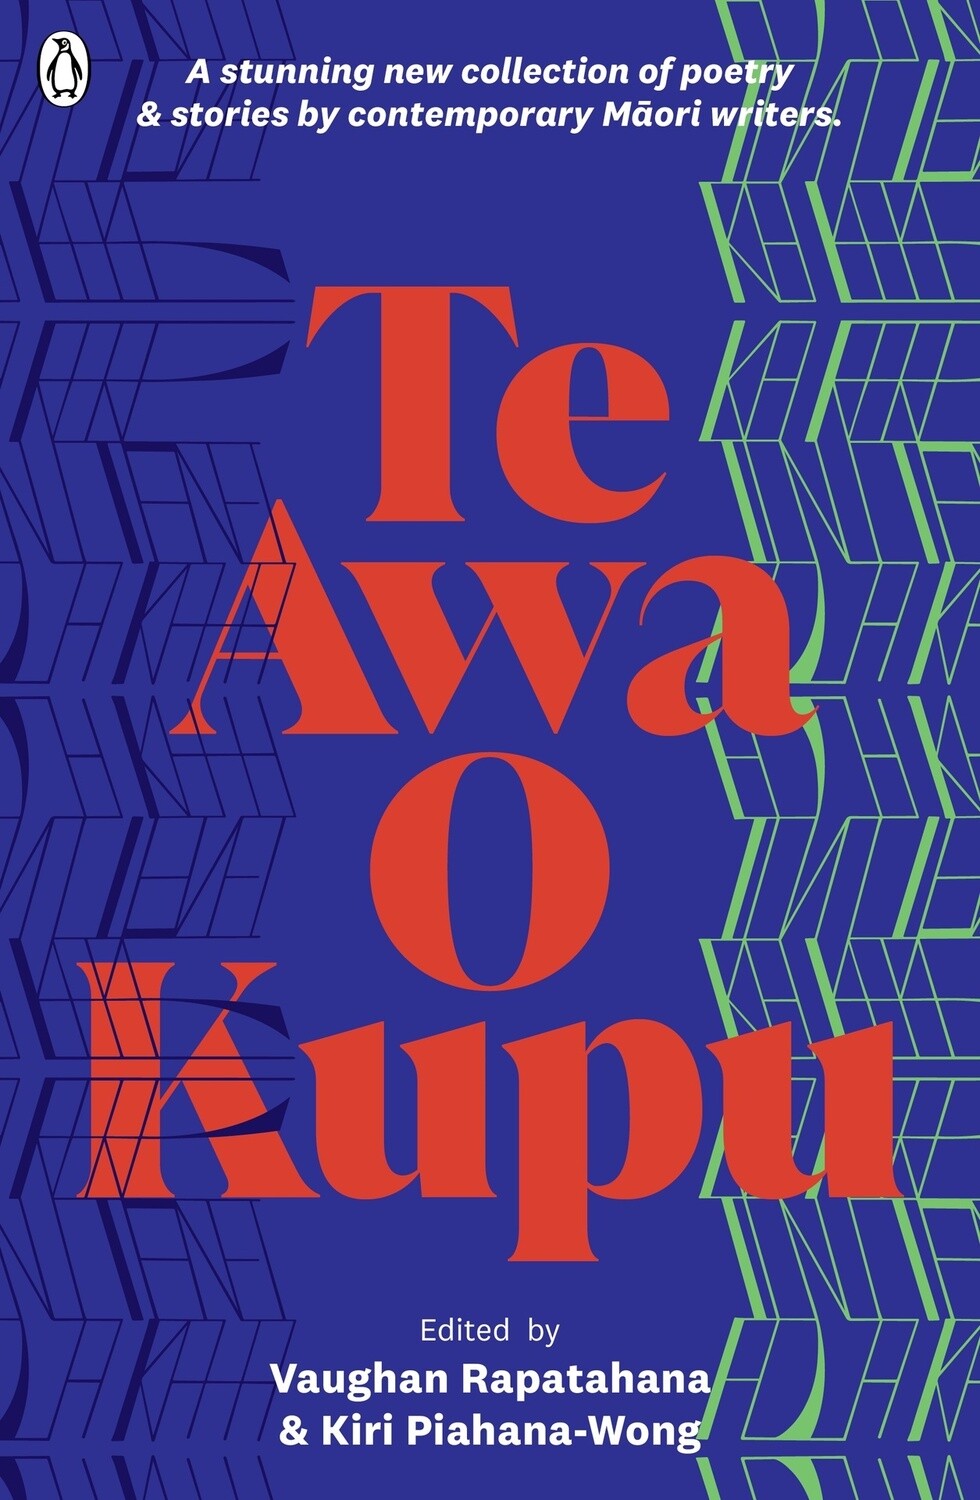 Te Awa o Kupu by Vaughan Rapatahana and Kiri Piahana-Wong